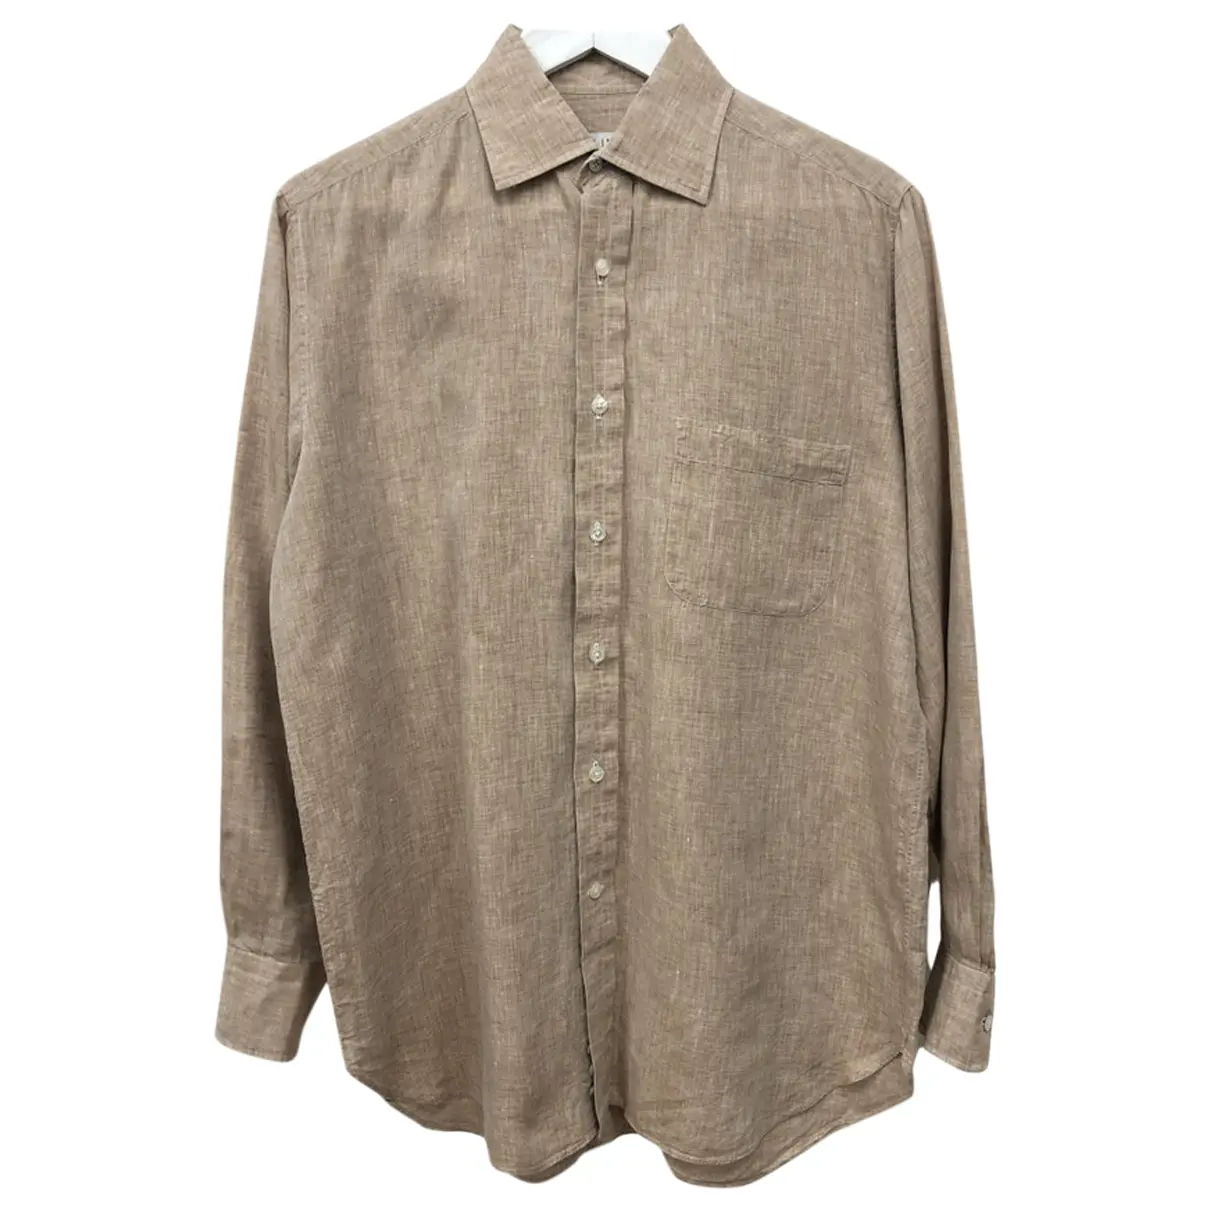 Linen shirt Alfred Dunhill